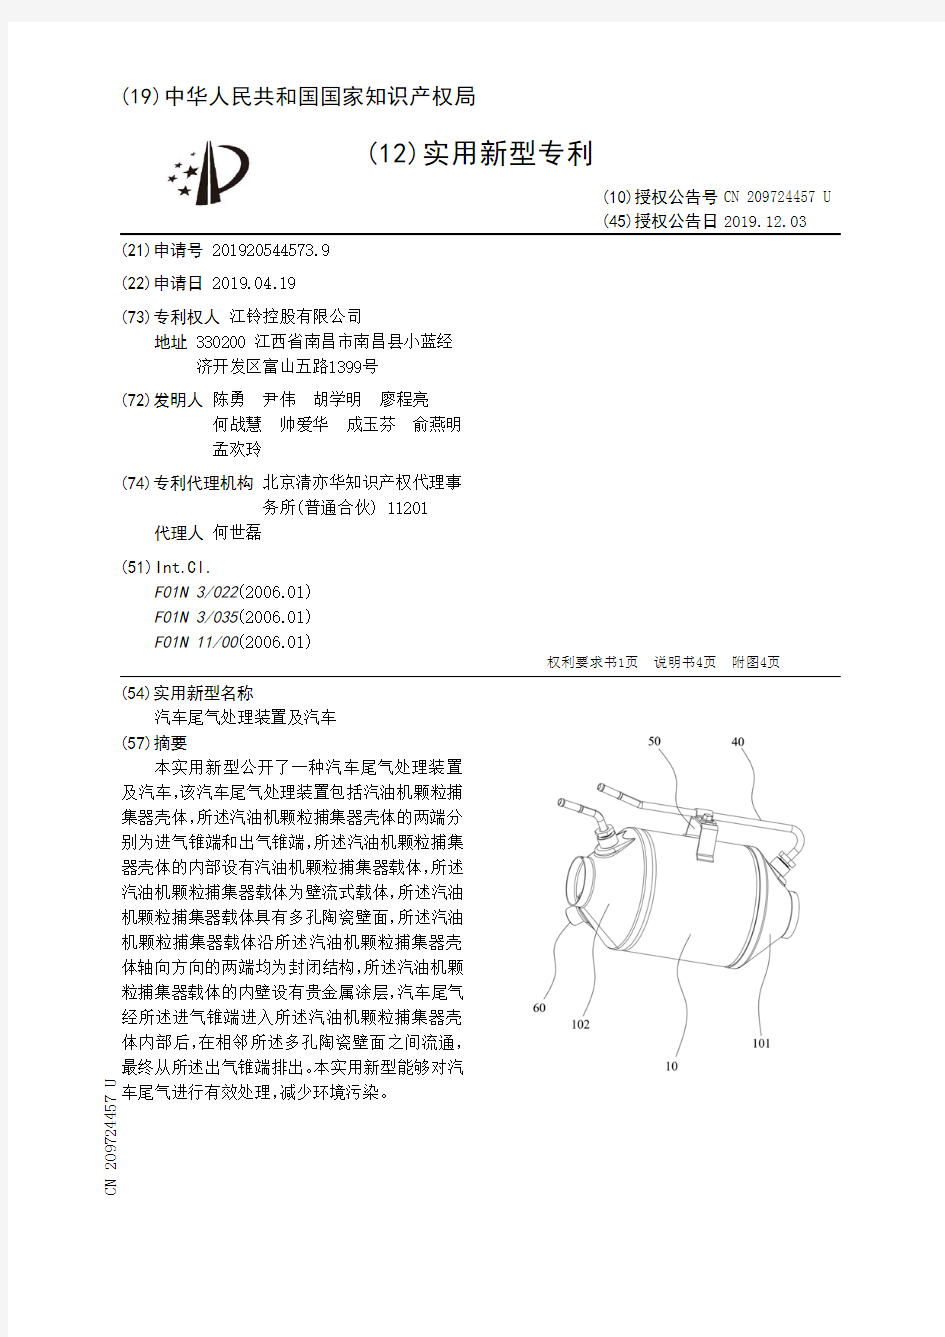 【CN209724457U】汽车尾气处理装置及汽车【专利】